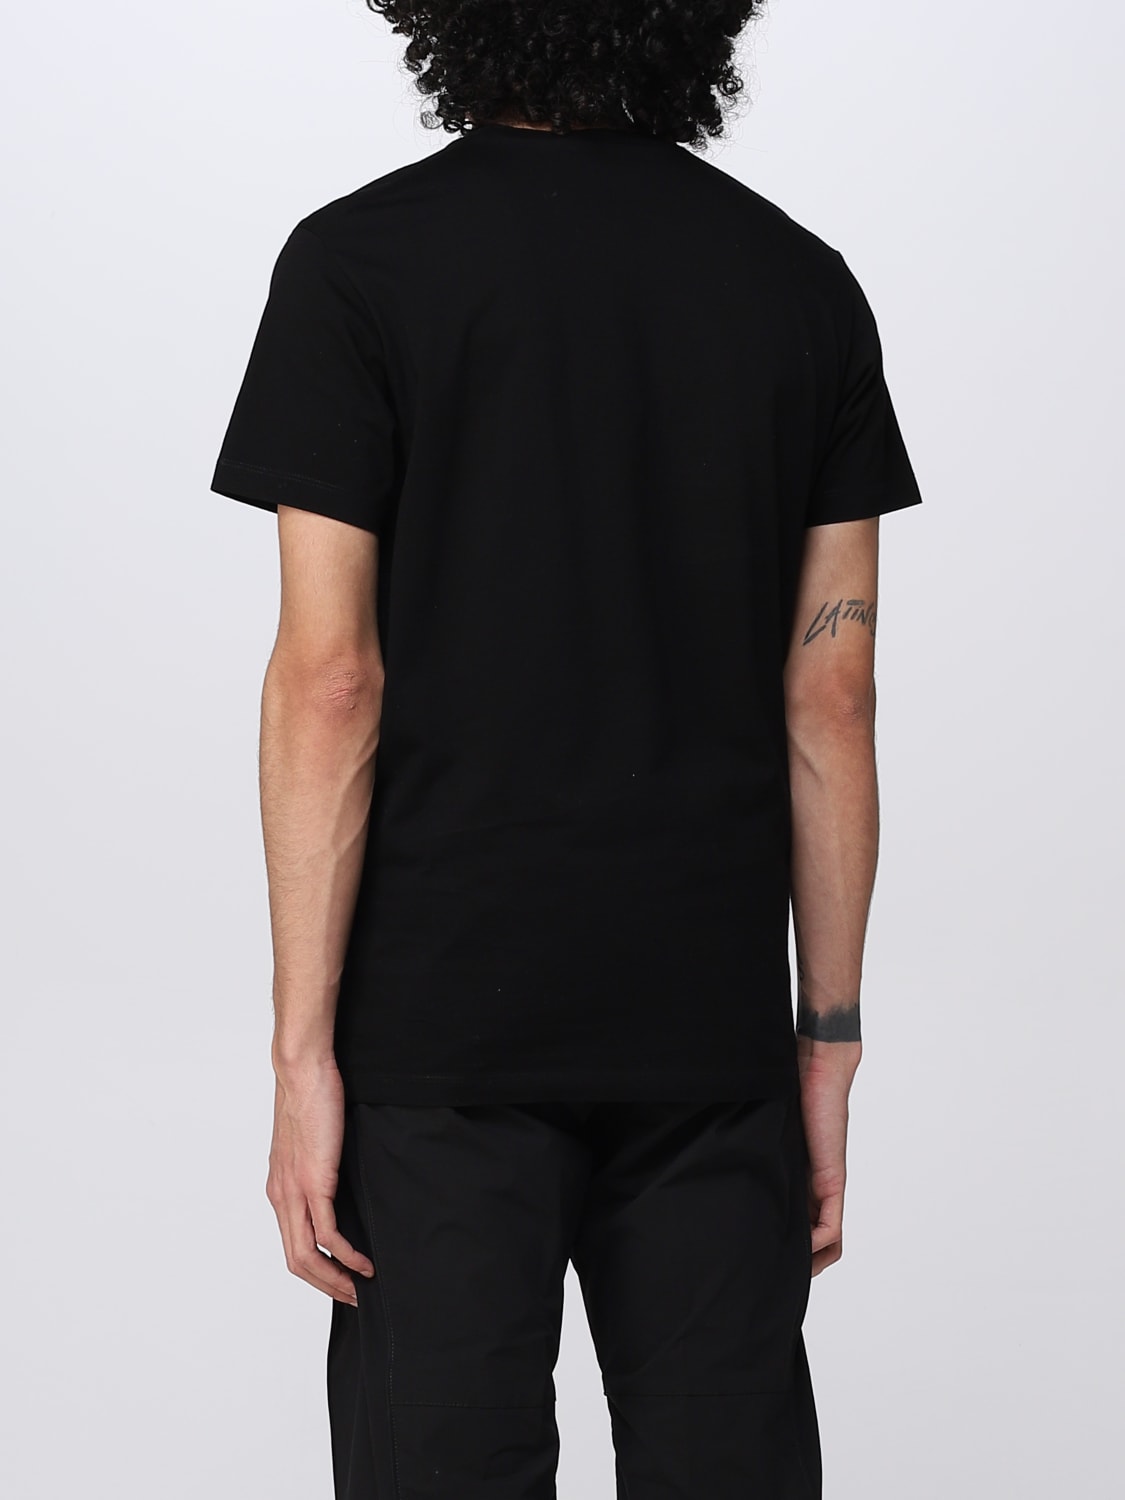 Dsquared2 Outlet: T-shirt men - Black | Dsquared2 t-shirt ...